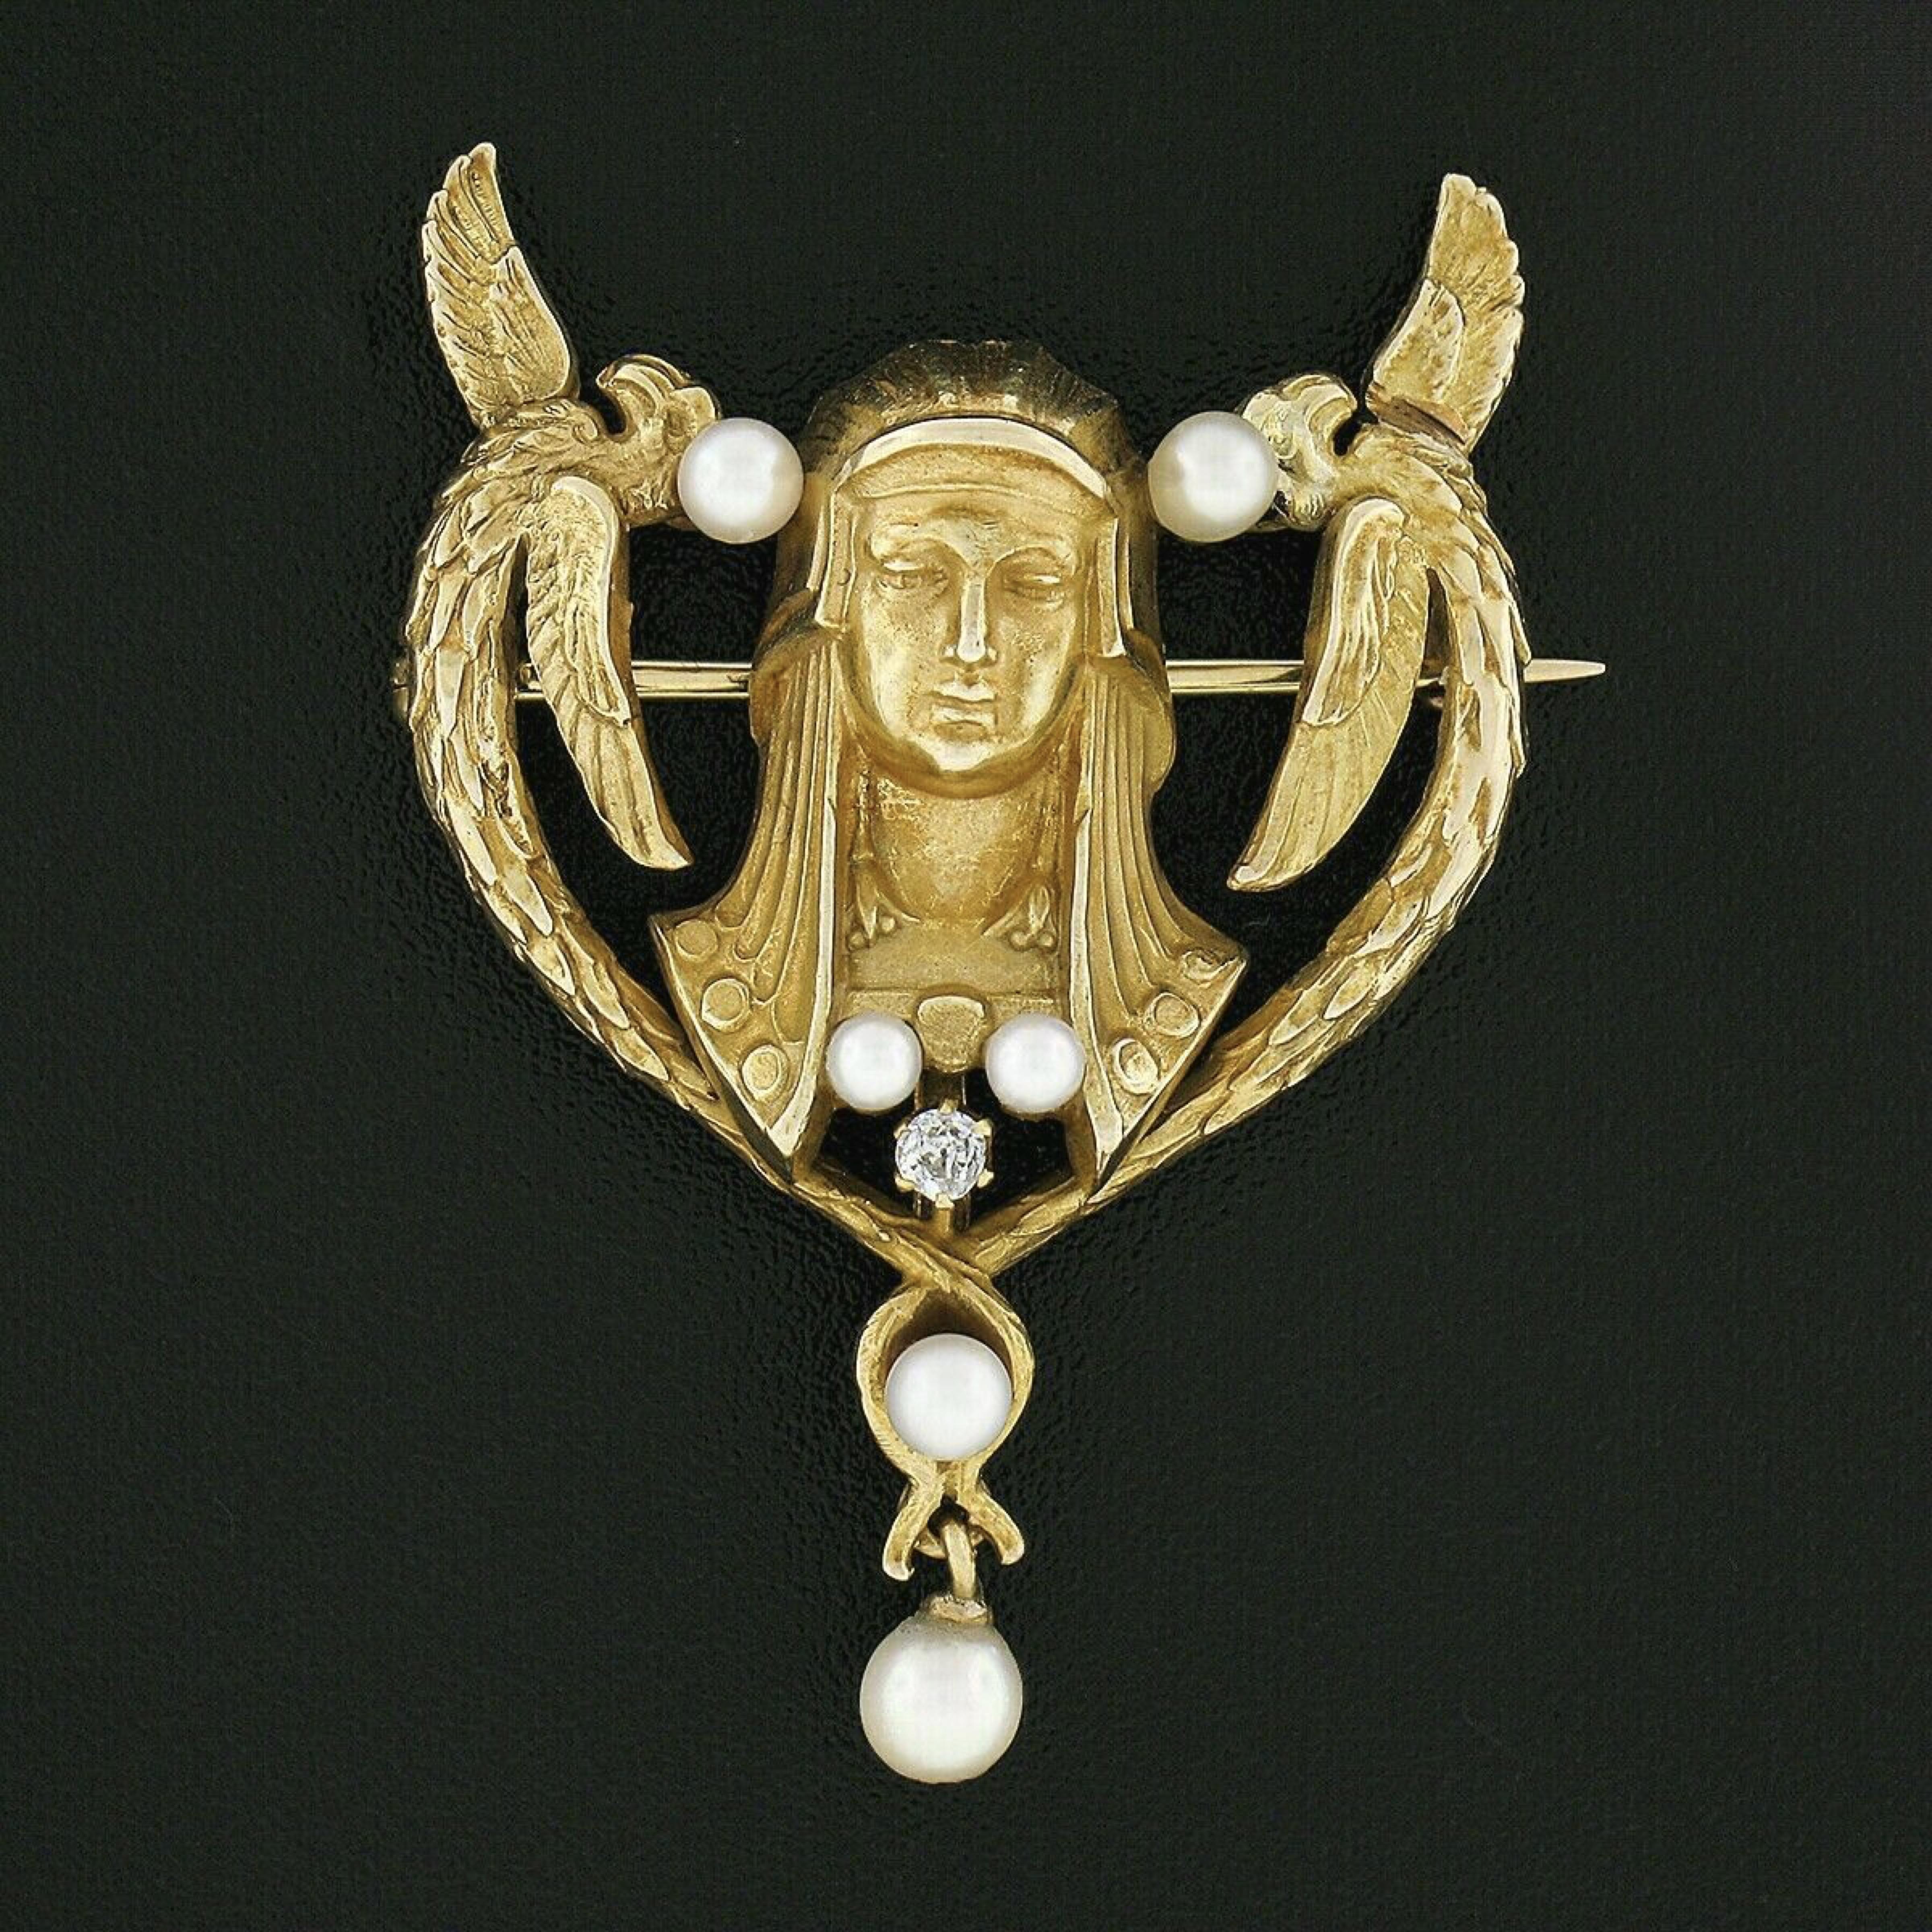 Cette remarquable broche ancienne a été fabriquée à partir d'or jaune massif 14 carats à l'époque de l'Art nouveau et présente un magnifique motif de renouveau égyptien serti d'un diamant naturel de qualité supérieure et de jolies perles de culture.